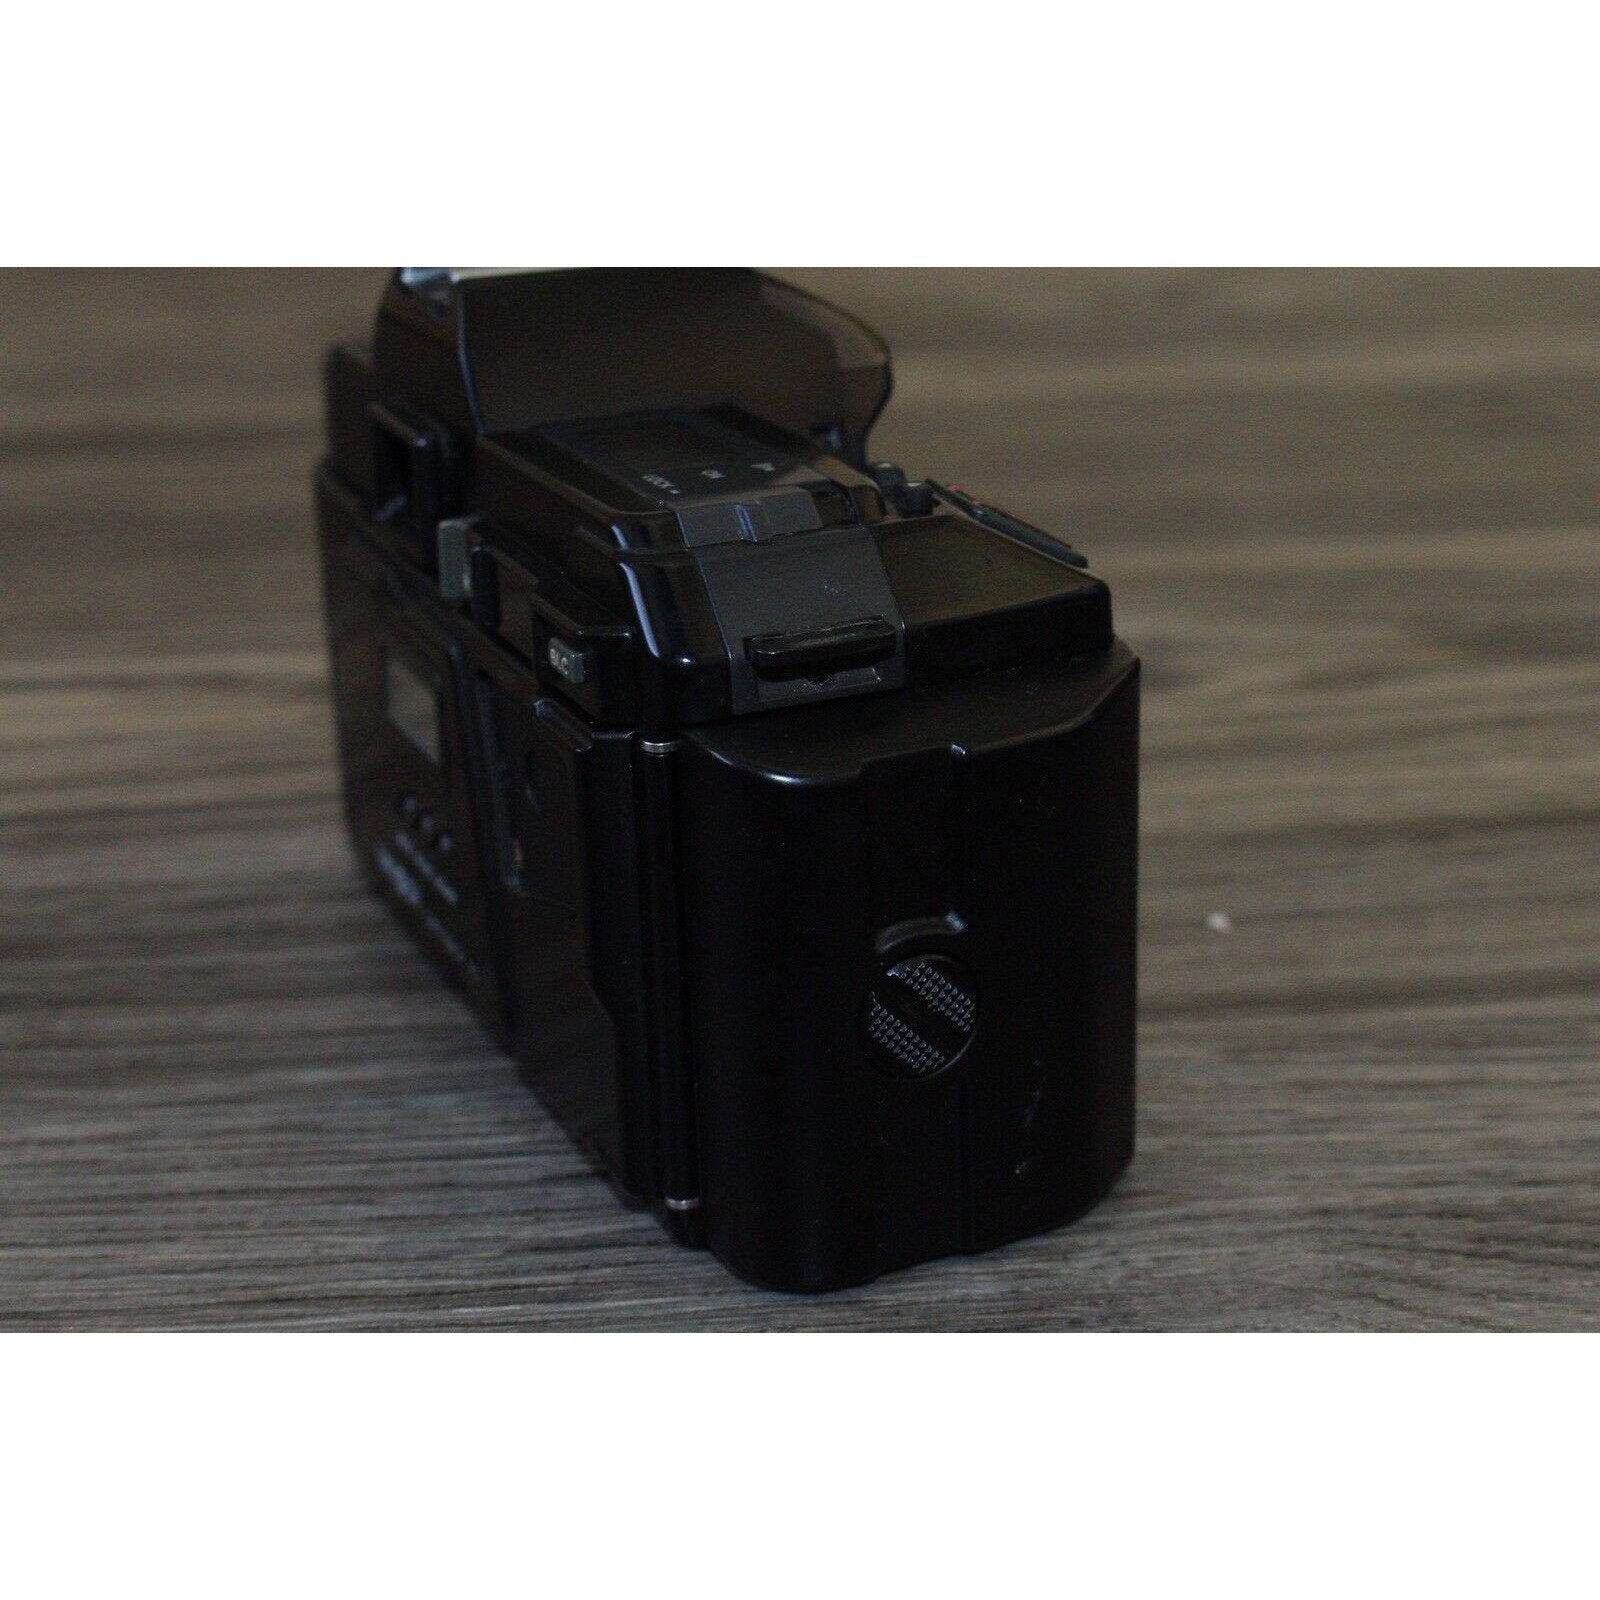 Minolta Maxxum 5000 w/AF 35mm Film SLR